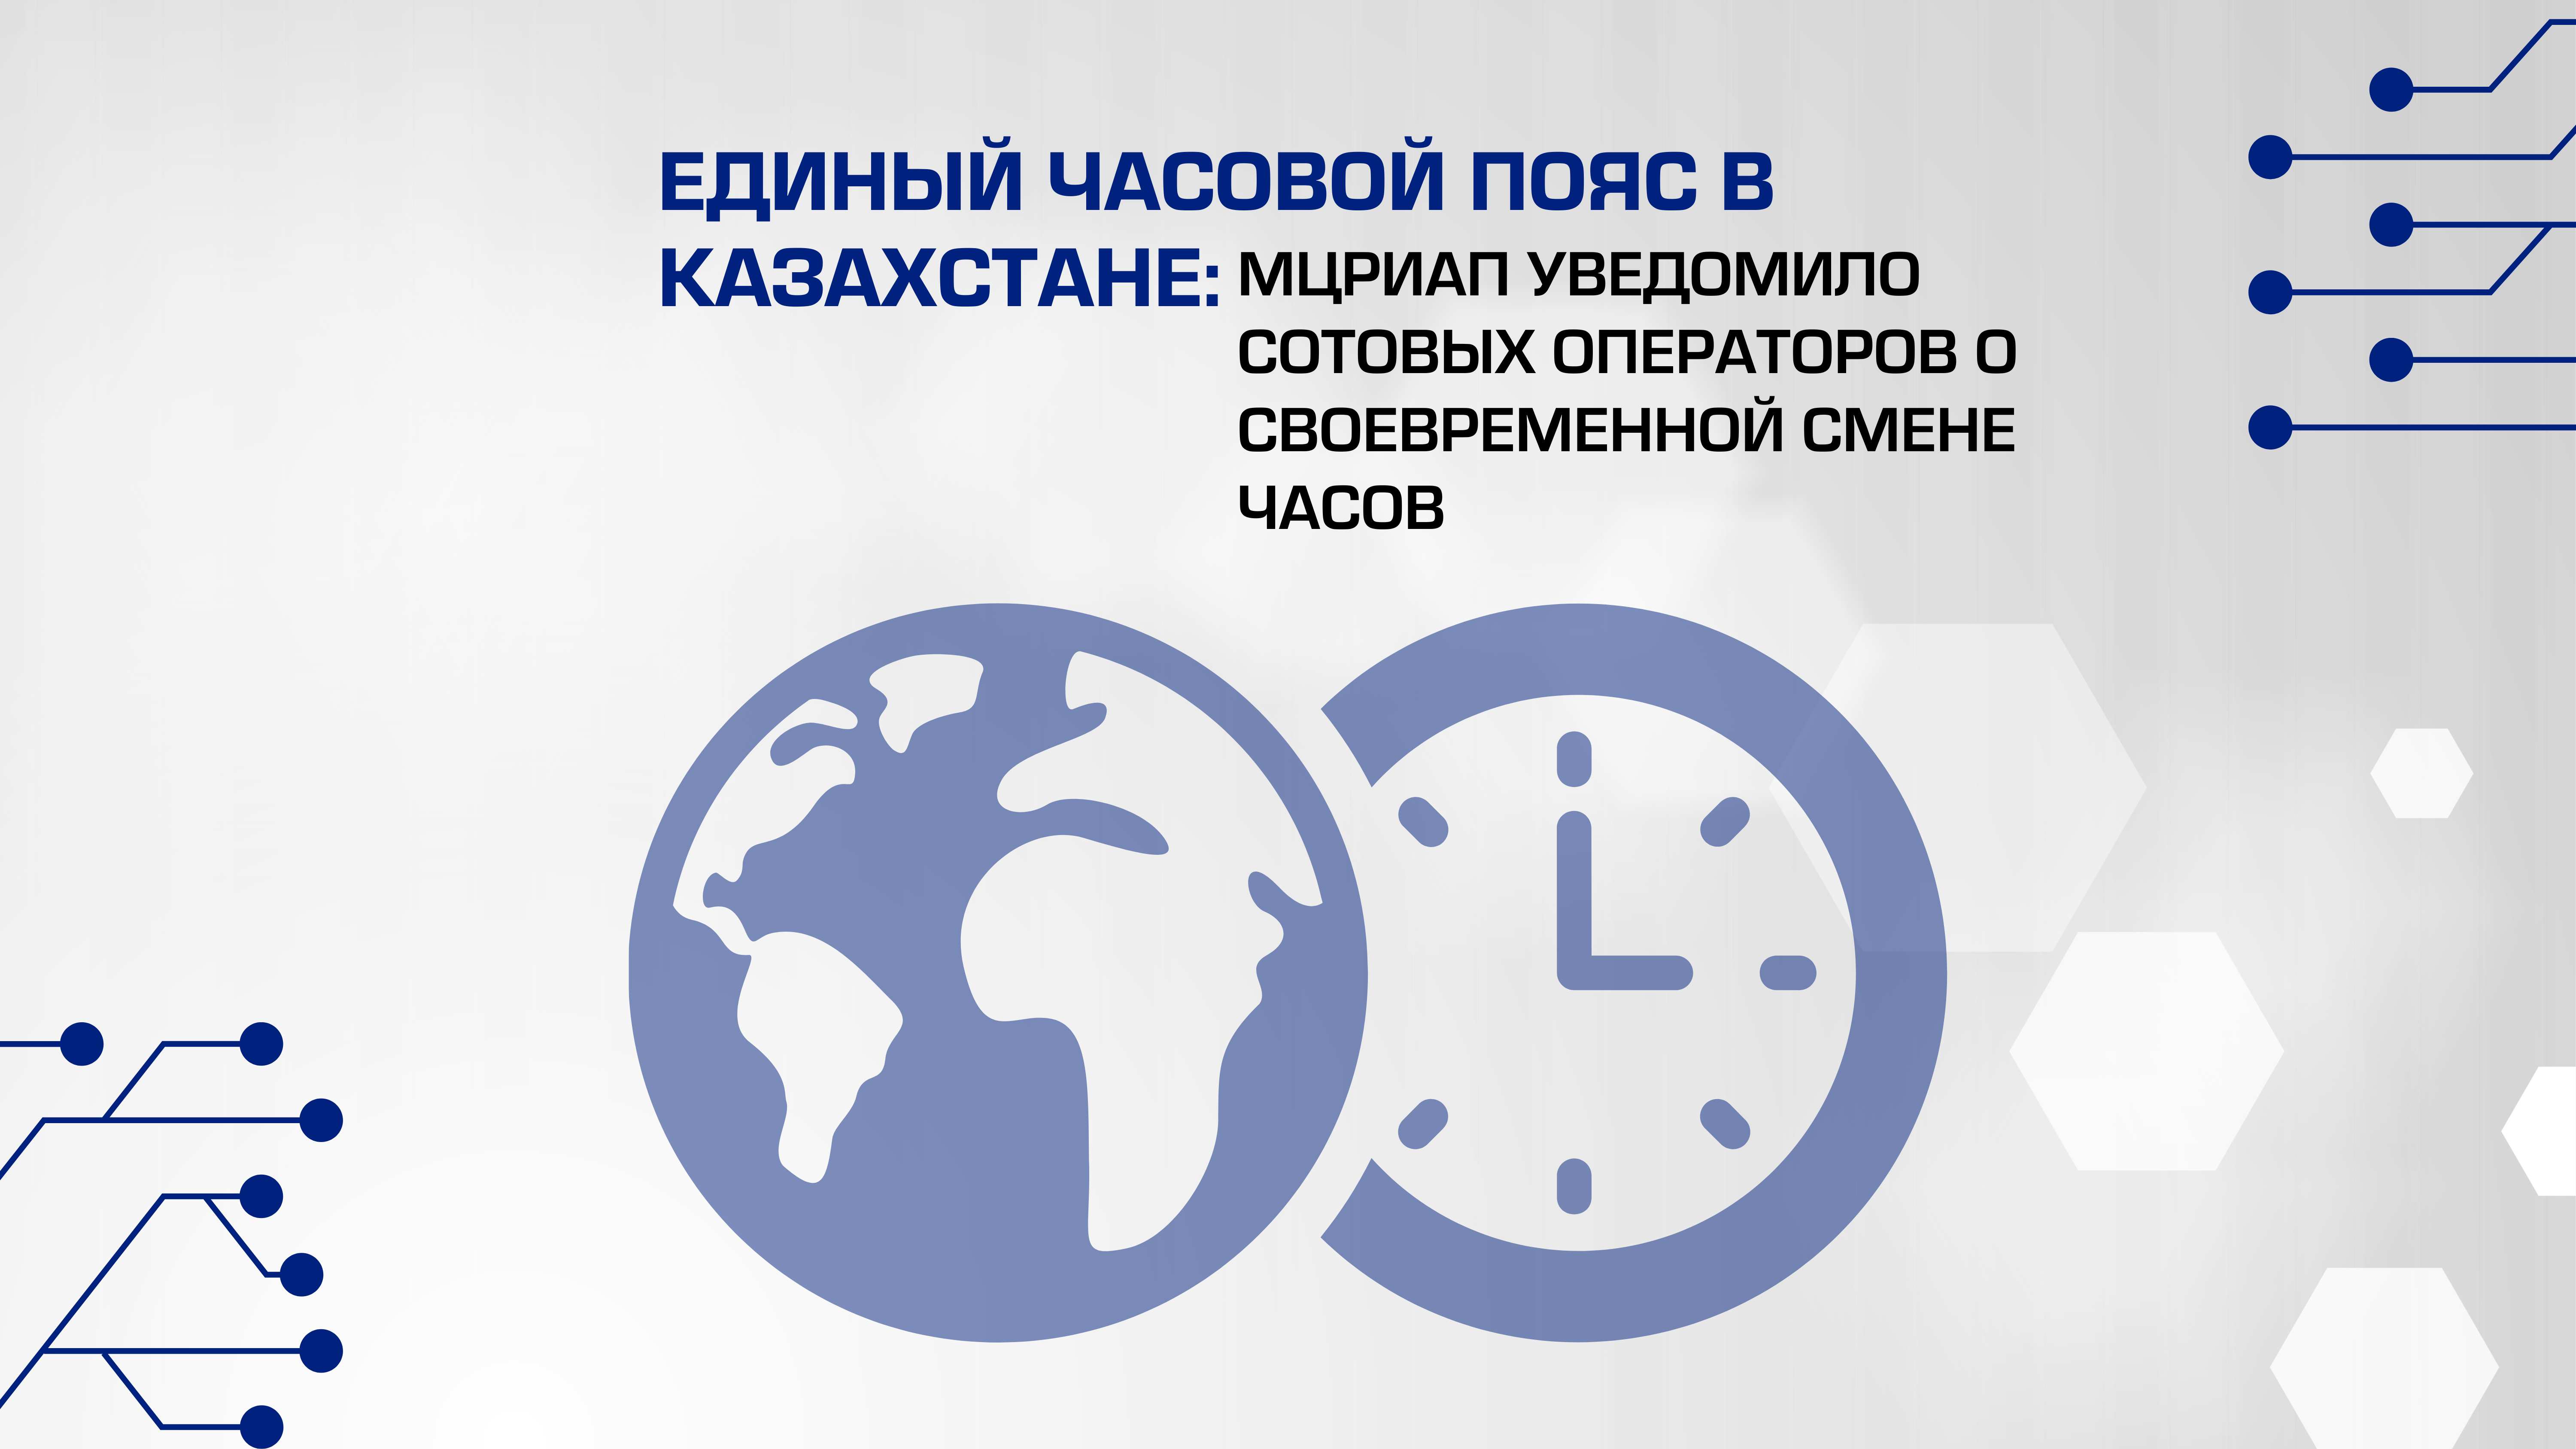 Единый часовой пояс в Казахстане: МЦРИАП уведомило сотовых операторов о своевременной смене часов